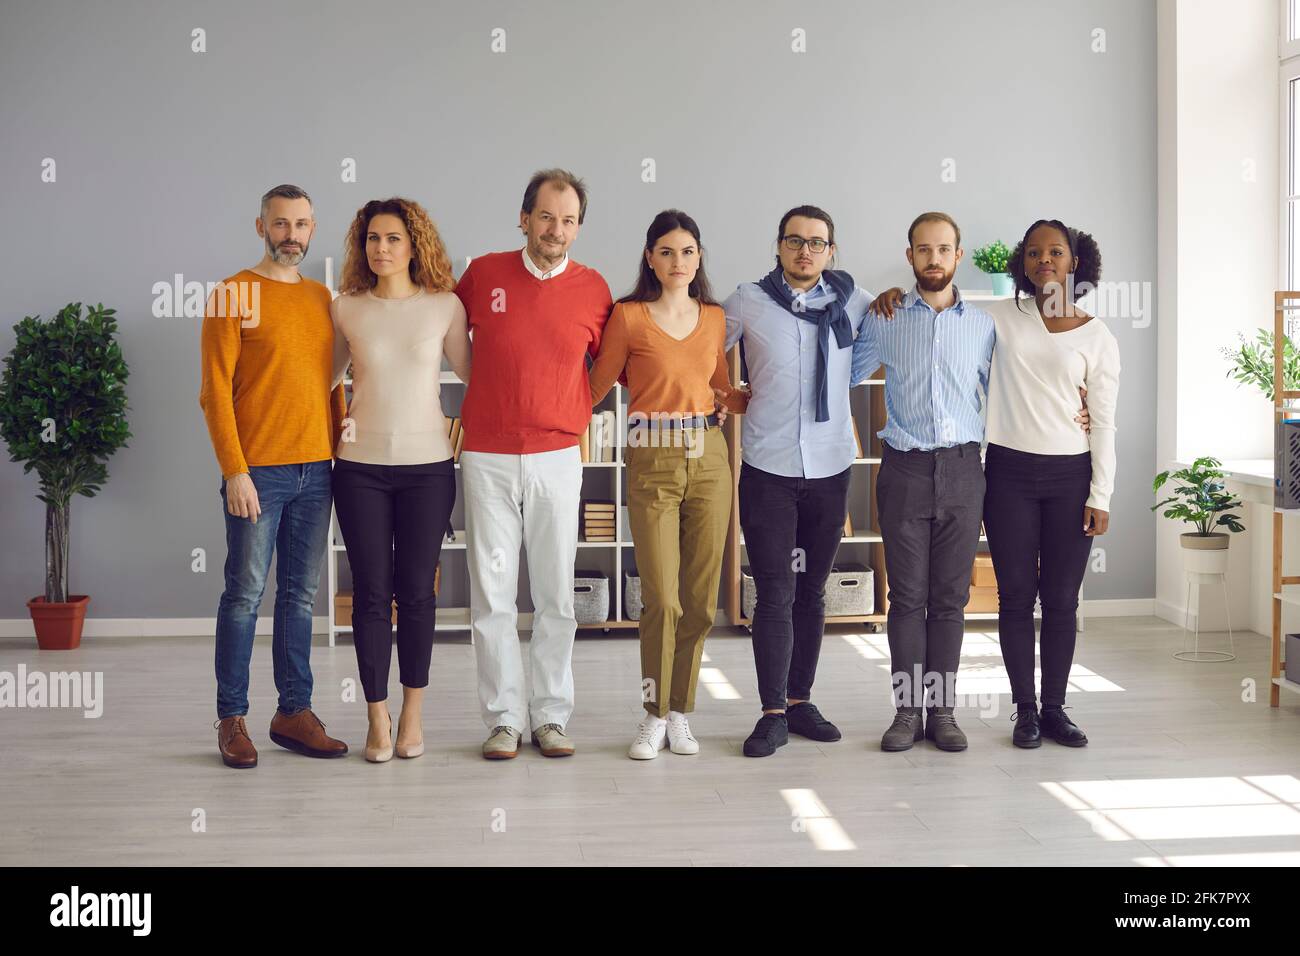 Verschiedene multiethnische Gruppen von Erwachsenen und jungen Menschen umarmen sich stehend In Reihe Stockfoto